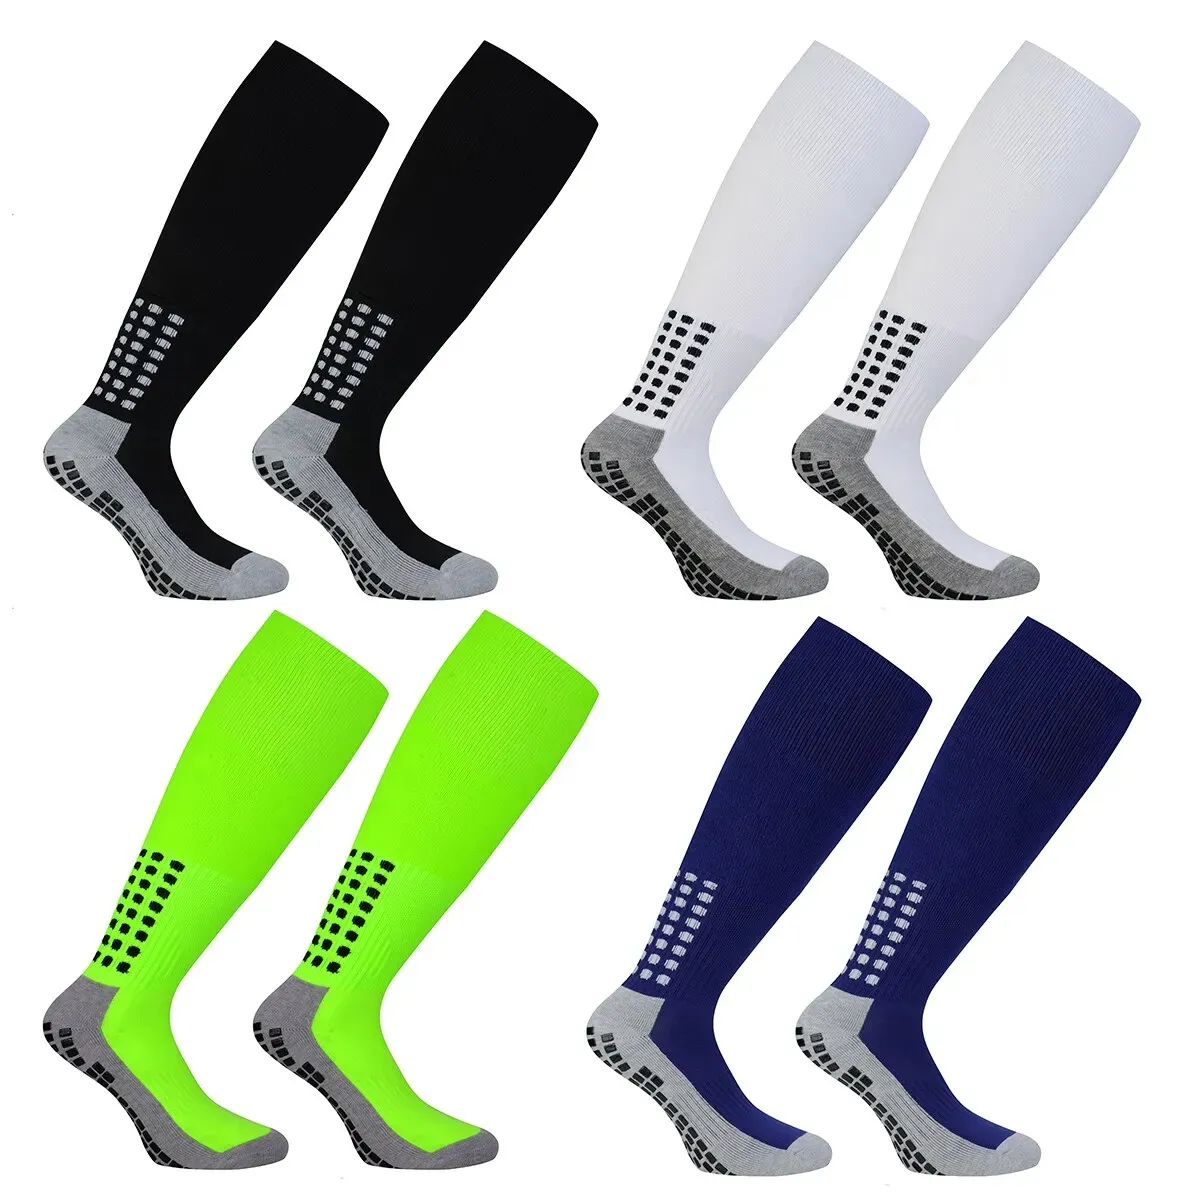 Kaus kaki panjang sepak bola profesional, Kaos Kaki latihan anti selip, handuk tebal, desain silikon bawah kaus kaki olahraga sepak bola